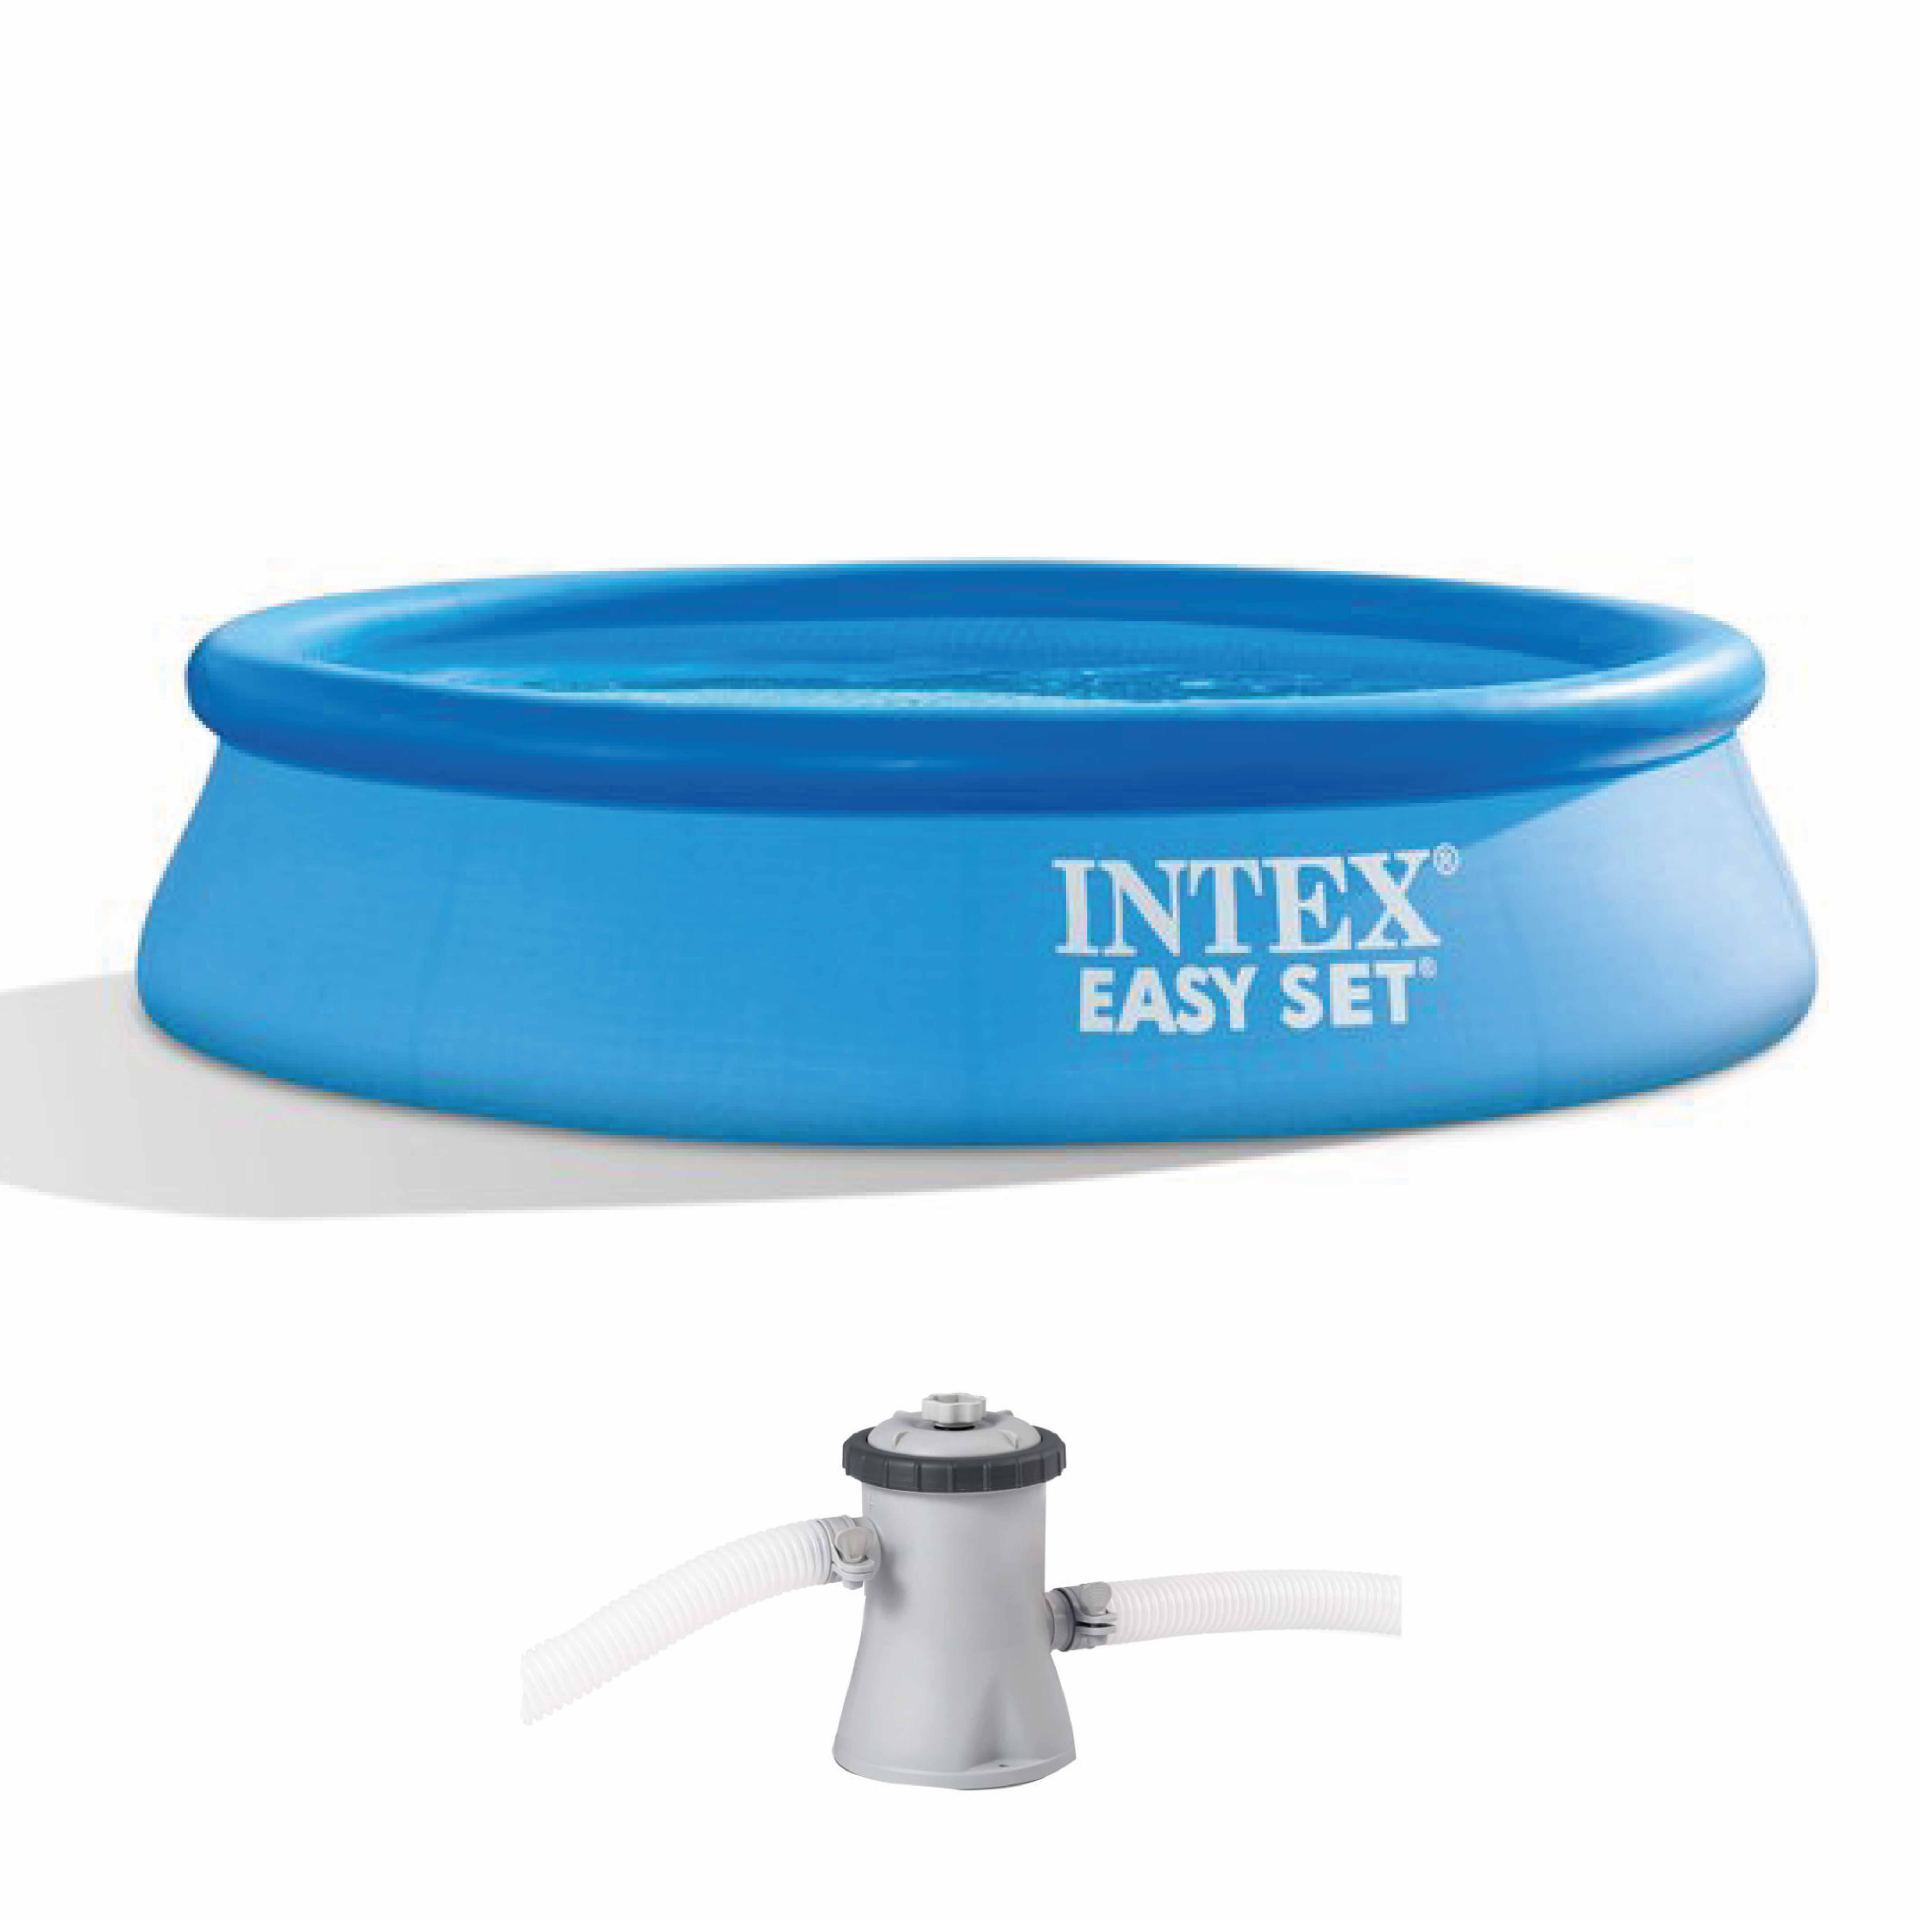 Intex easy set pool set 244cm x 61cm